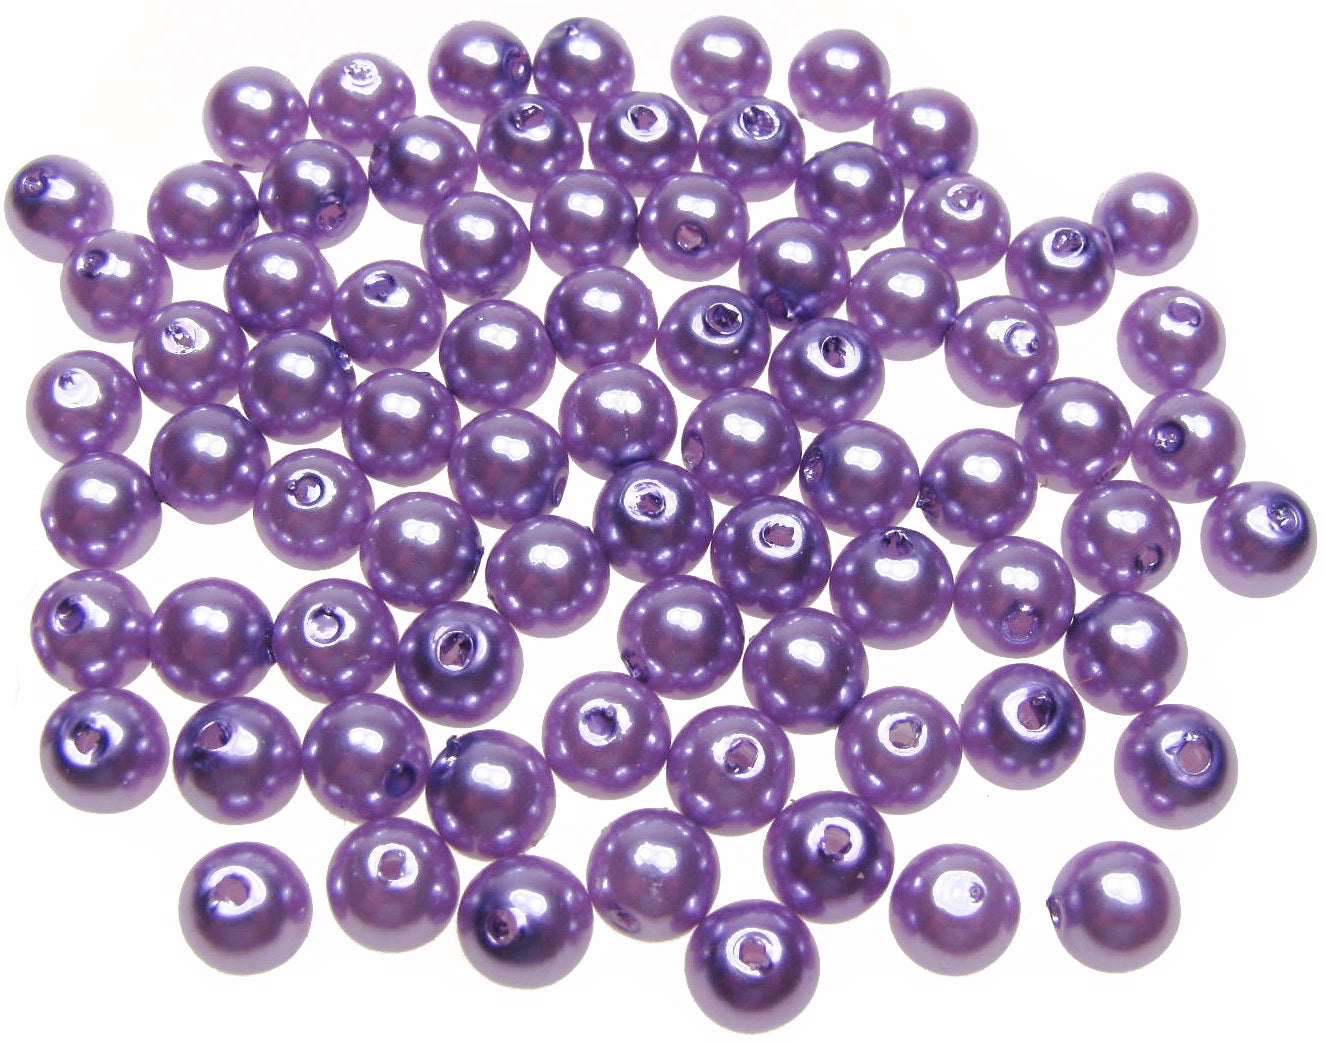 80 Wachsperlen lila hell 8mm, Perlen basteln verzieren, Kunststoffperlen